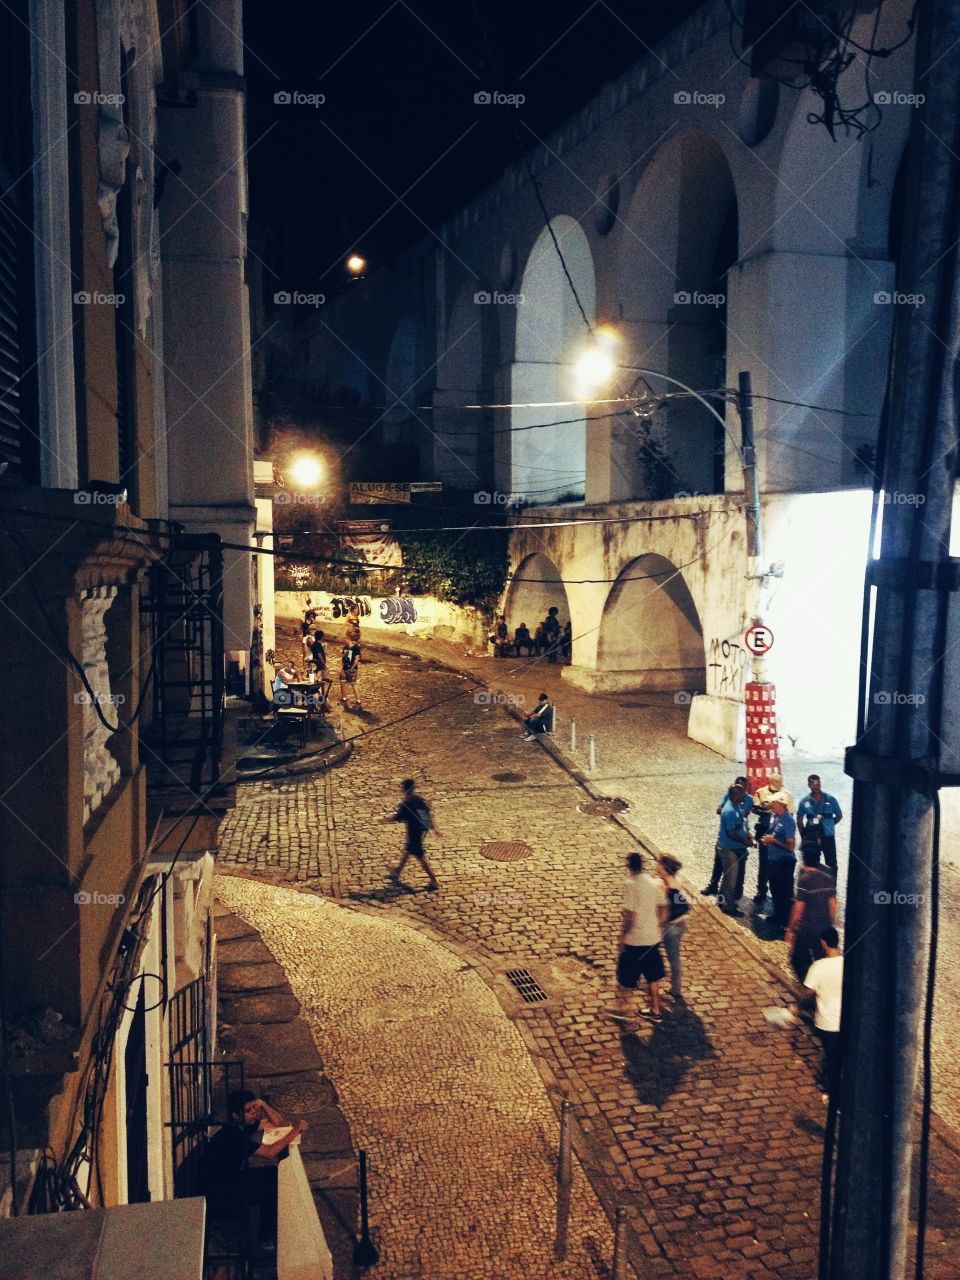 Lapa at night
Rio de Janeiro, Brasil